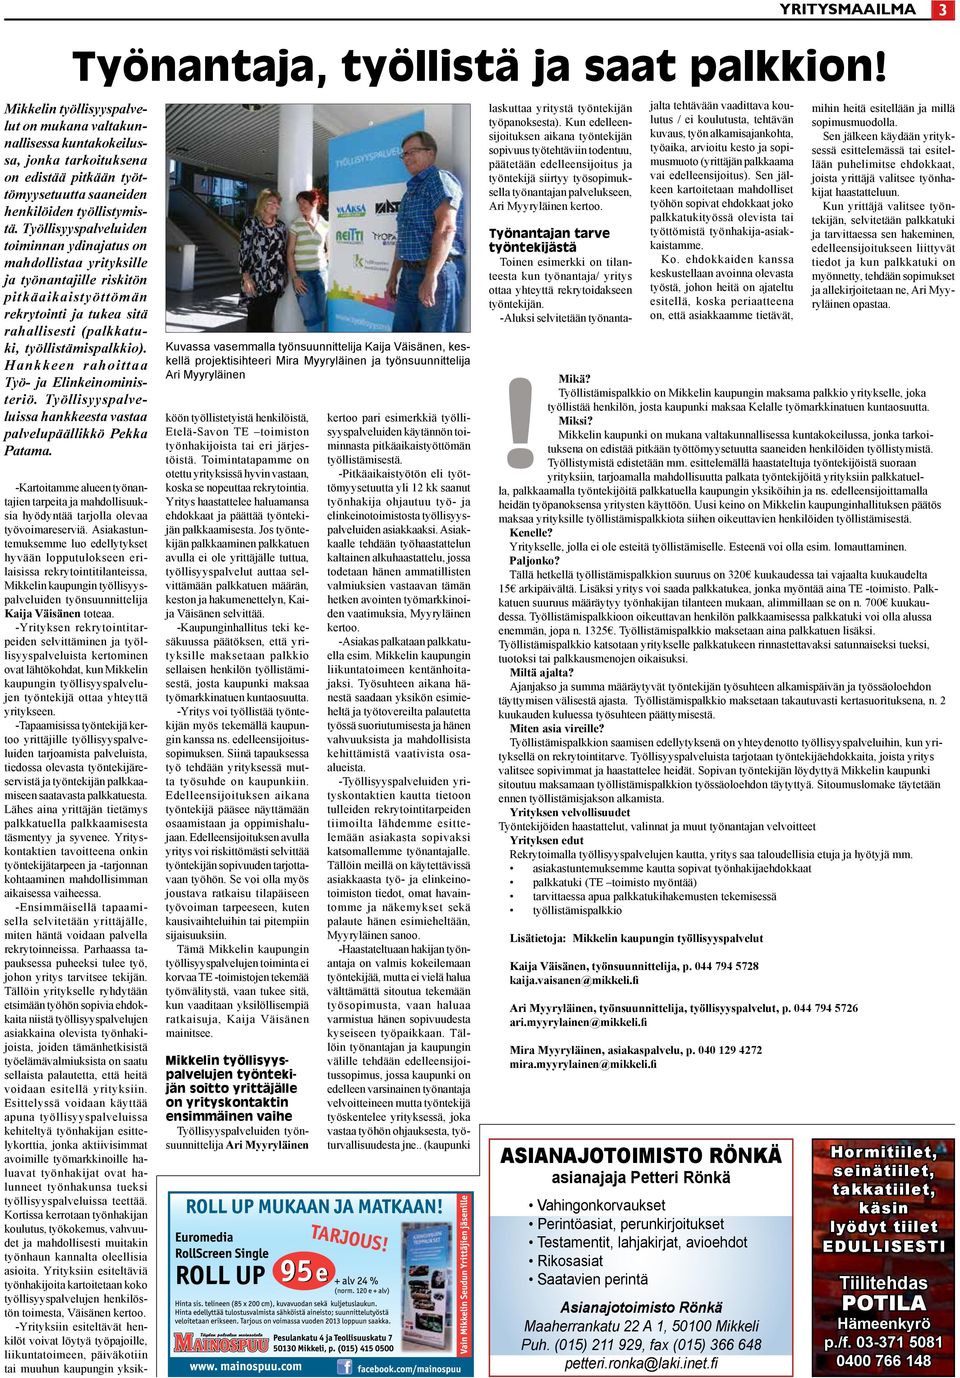 Mikkelin työllisyyspalvelut on mukana valtakunnallisessa kuntakokeilussa, jonka tarkoituksena on edistää pitkään työttömyysetuutta saaneiden henkilöiden työllistymistä.